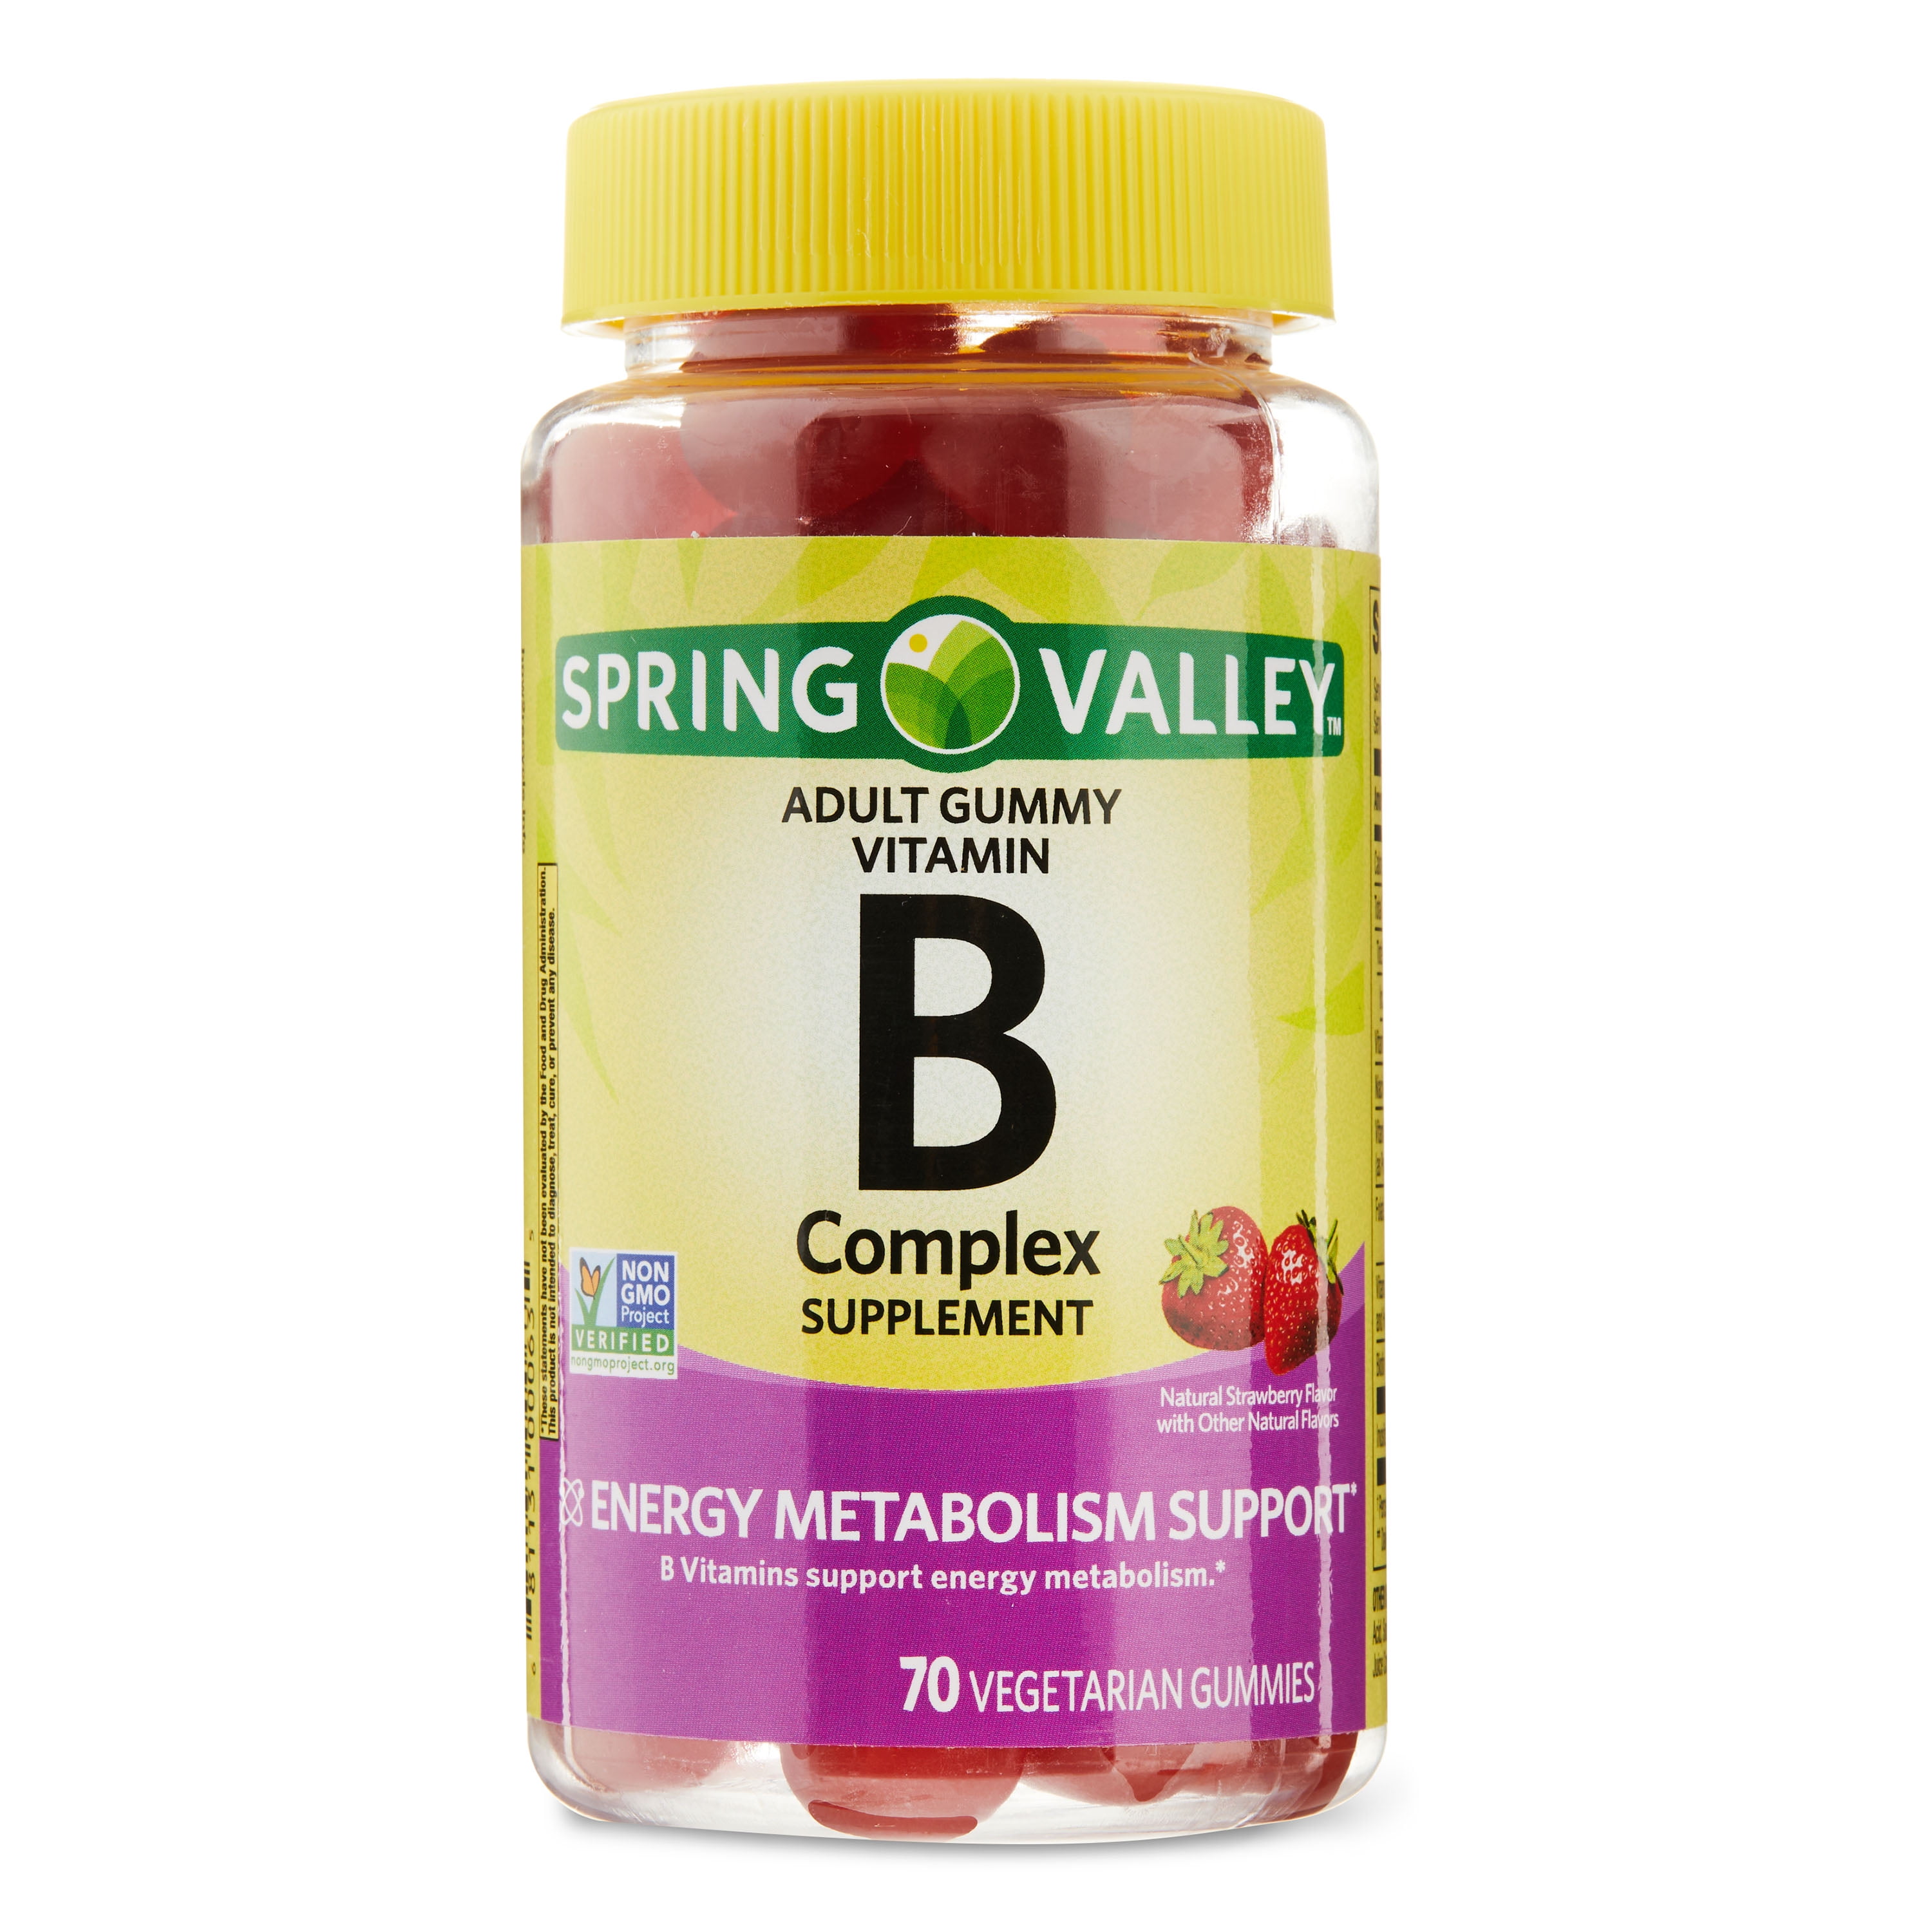 spring-valley-vitamin-b-complex-gummy-supplements-70-count-walmart